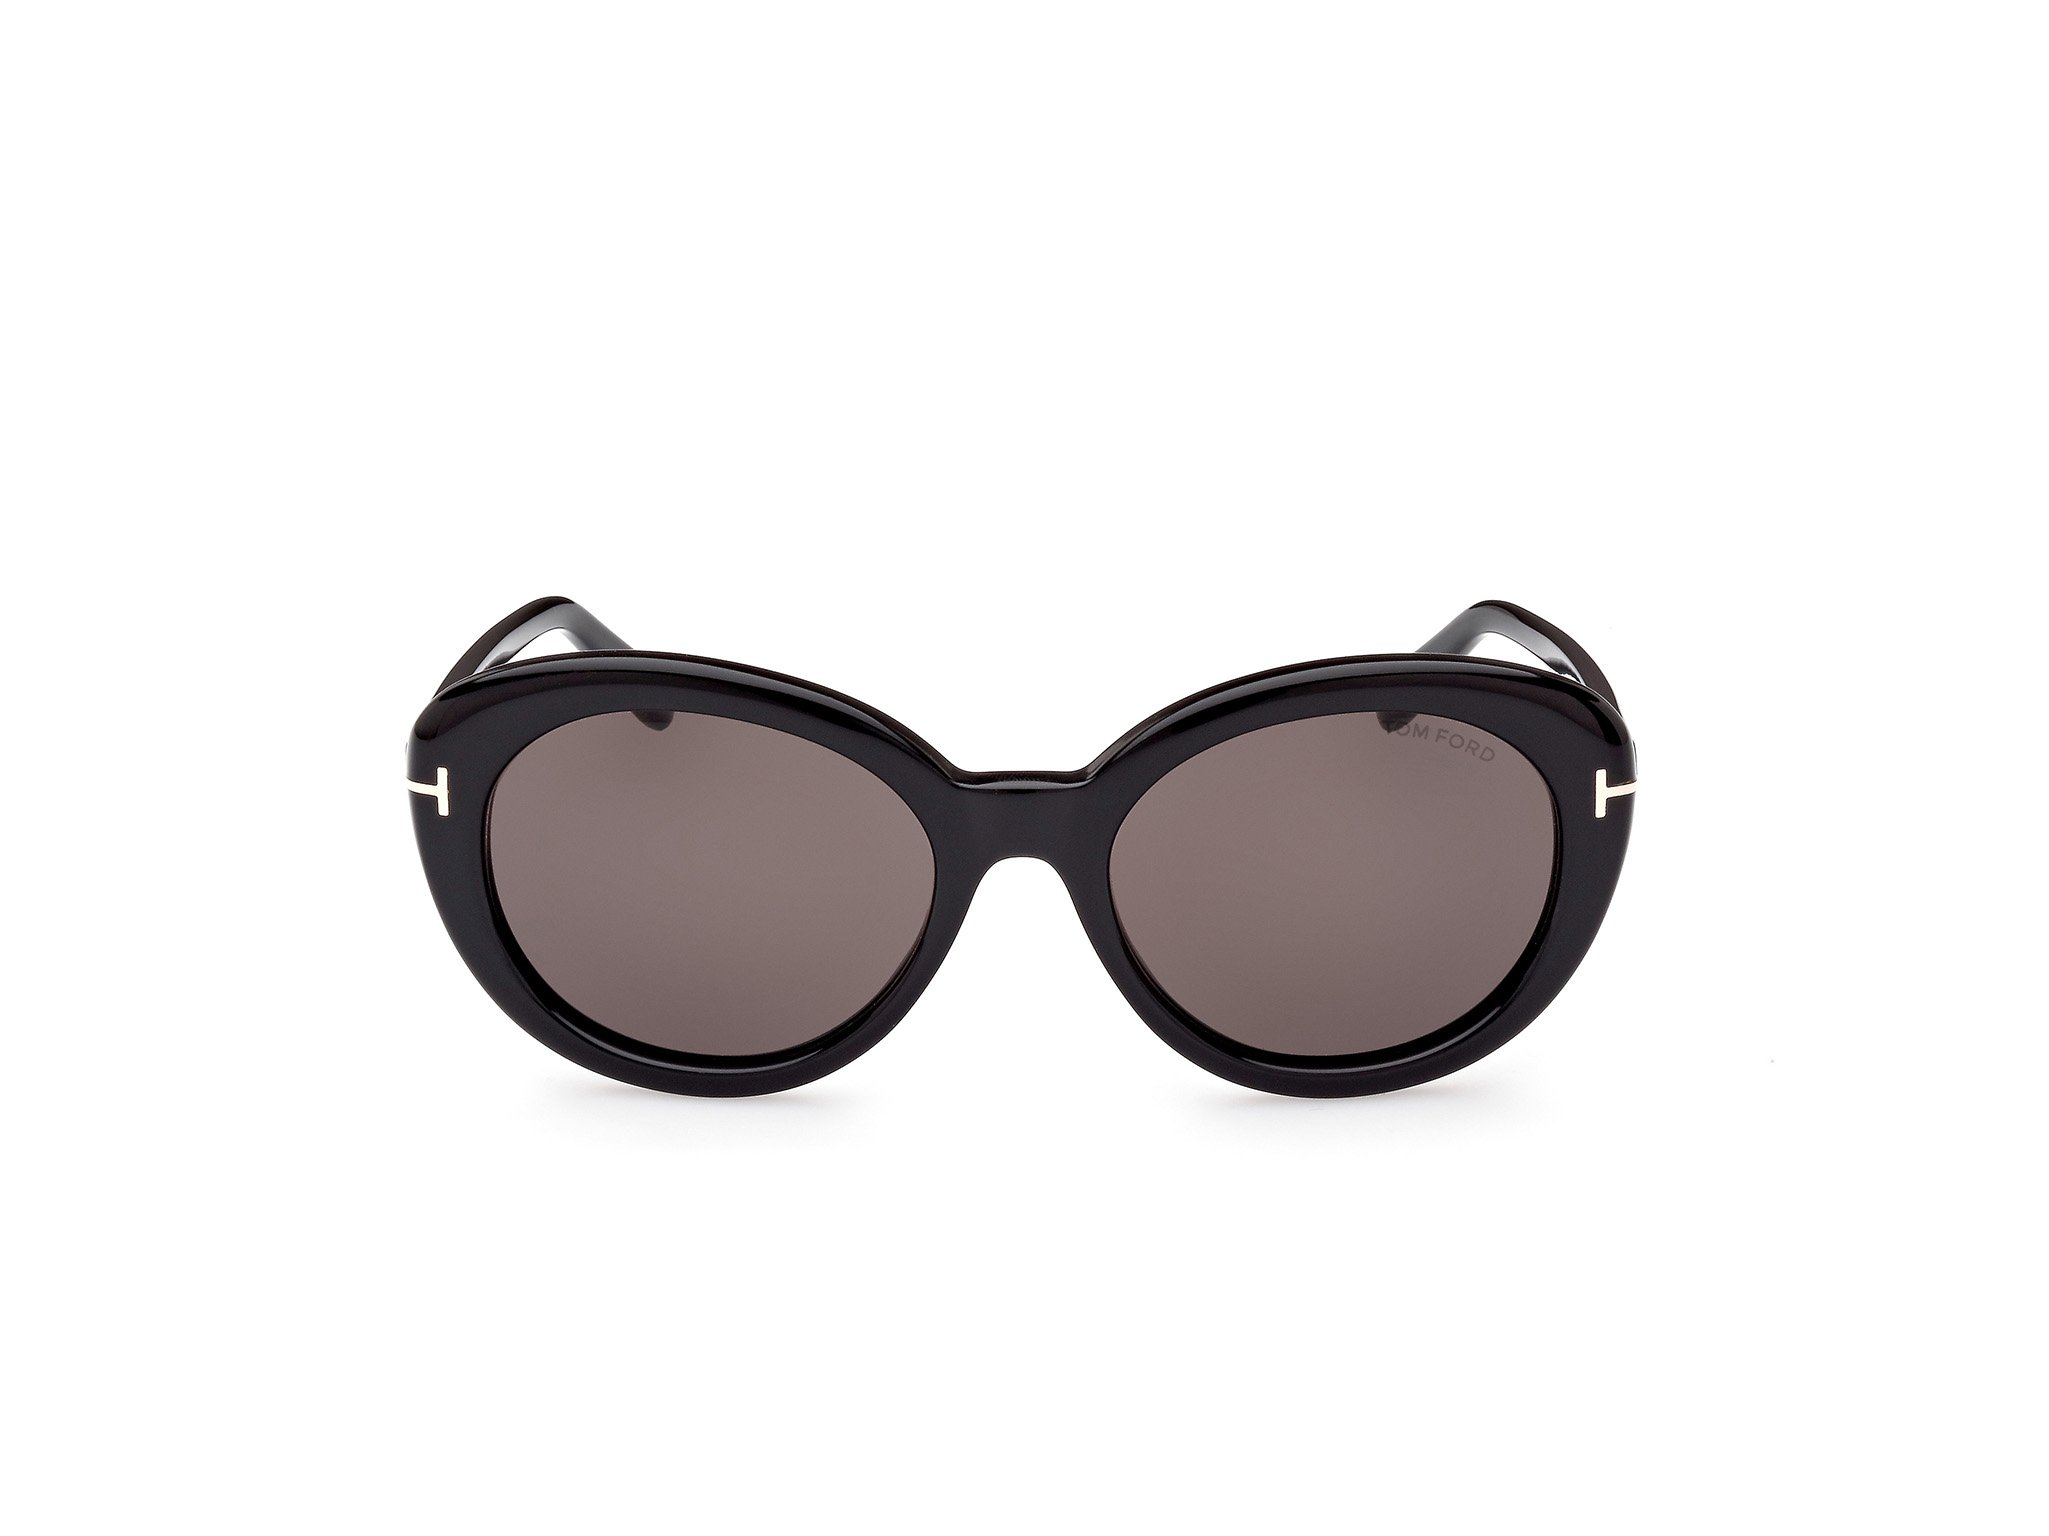 Das Bild zeigt die Sonnenbrille FT1009 der Marke Tom Ford in schwarz von vorne.